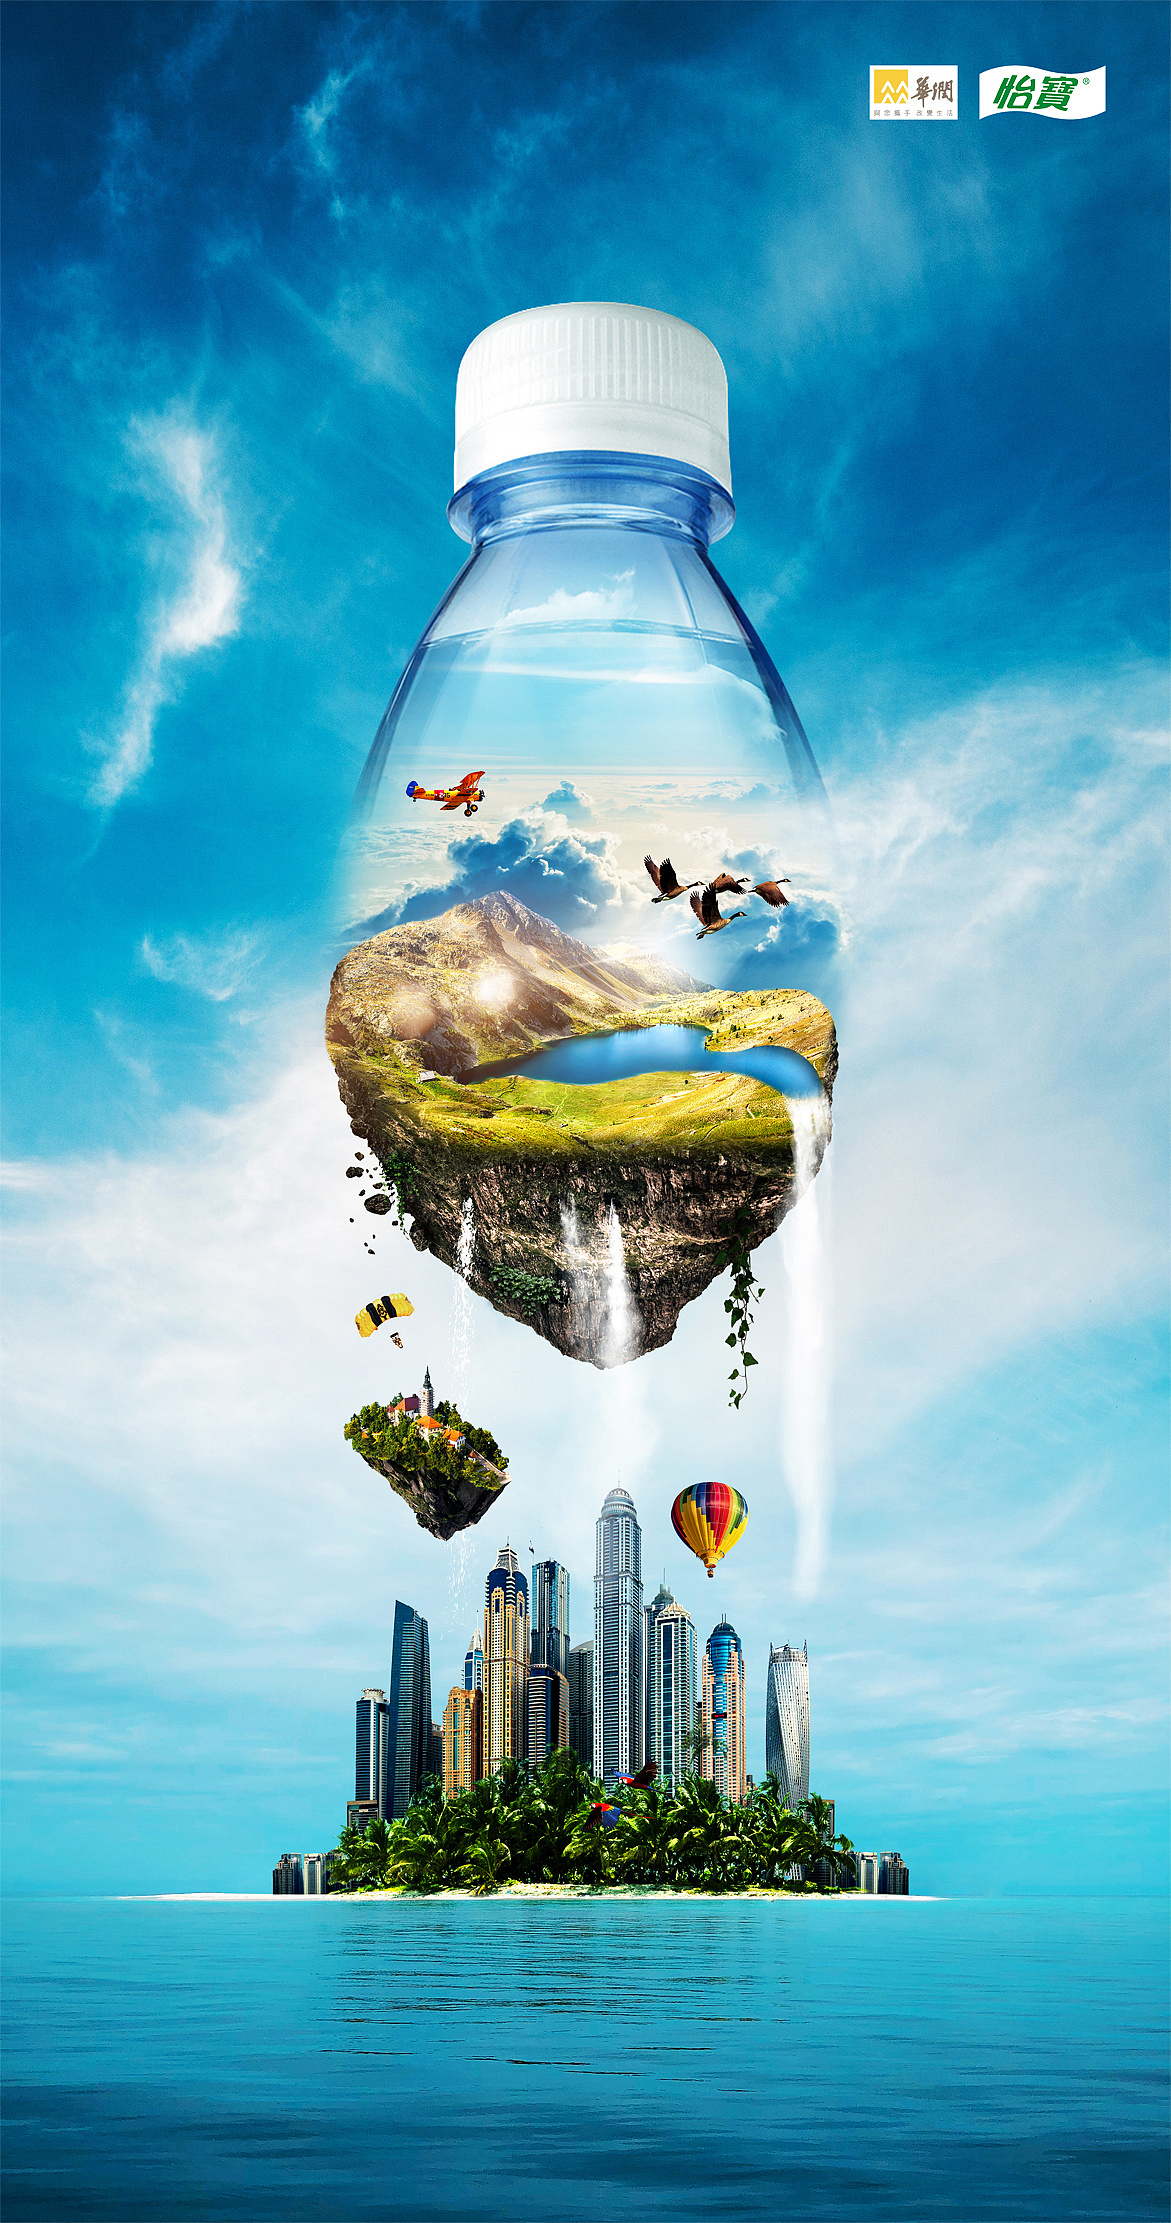 国外矿泉水创意广告图片